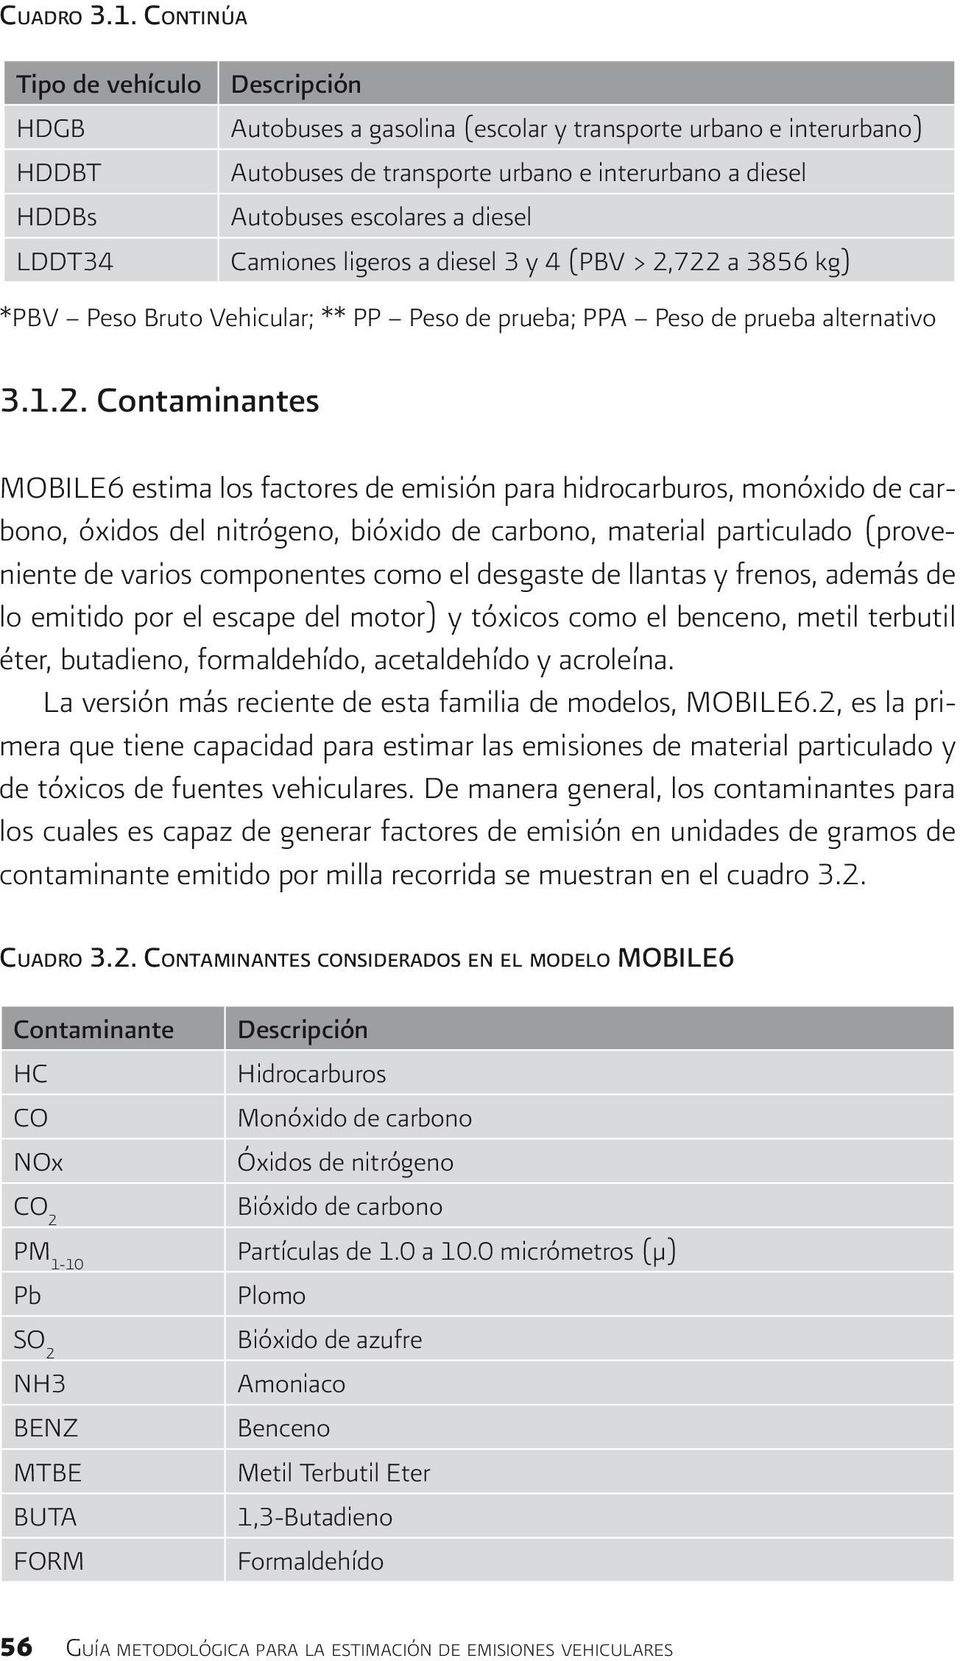 3 y 4 (PBV > 2,722 a 3856 kg) MOBILE6 estima los factores de emisión para hidrocarburos, monóxido de carbono, óxidos del nitrógeno, bióxido de carbono, material particulado (proveniente de varios